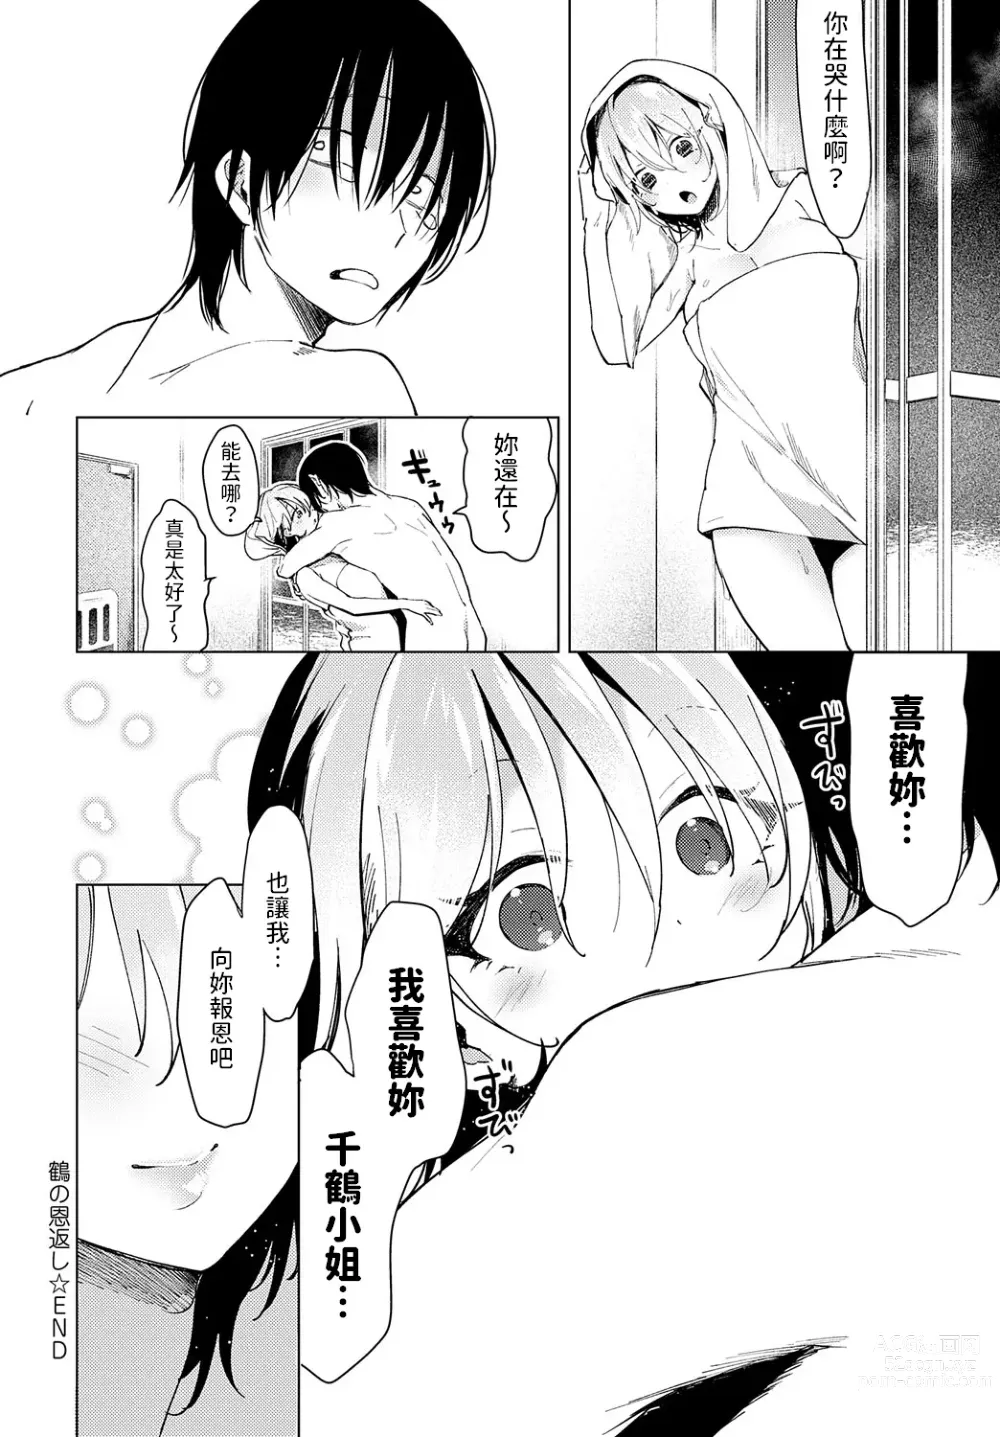 Page 30 of manga Tsuru no Ongaeshi